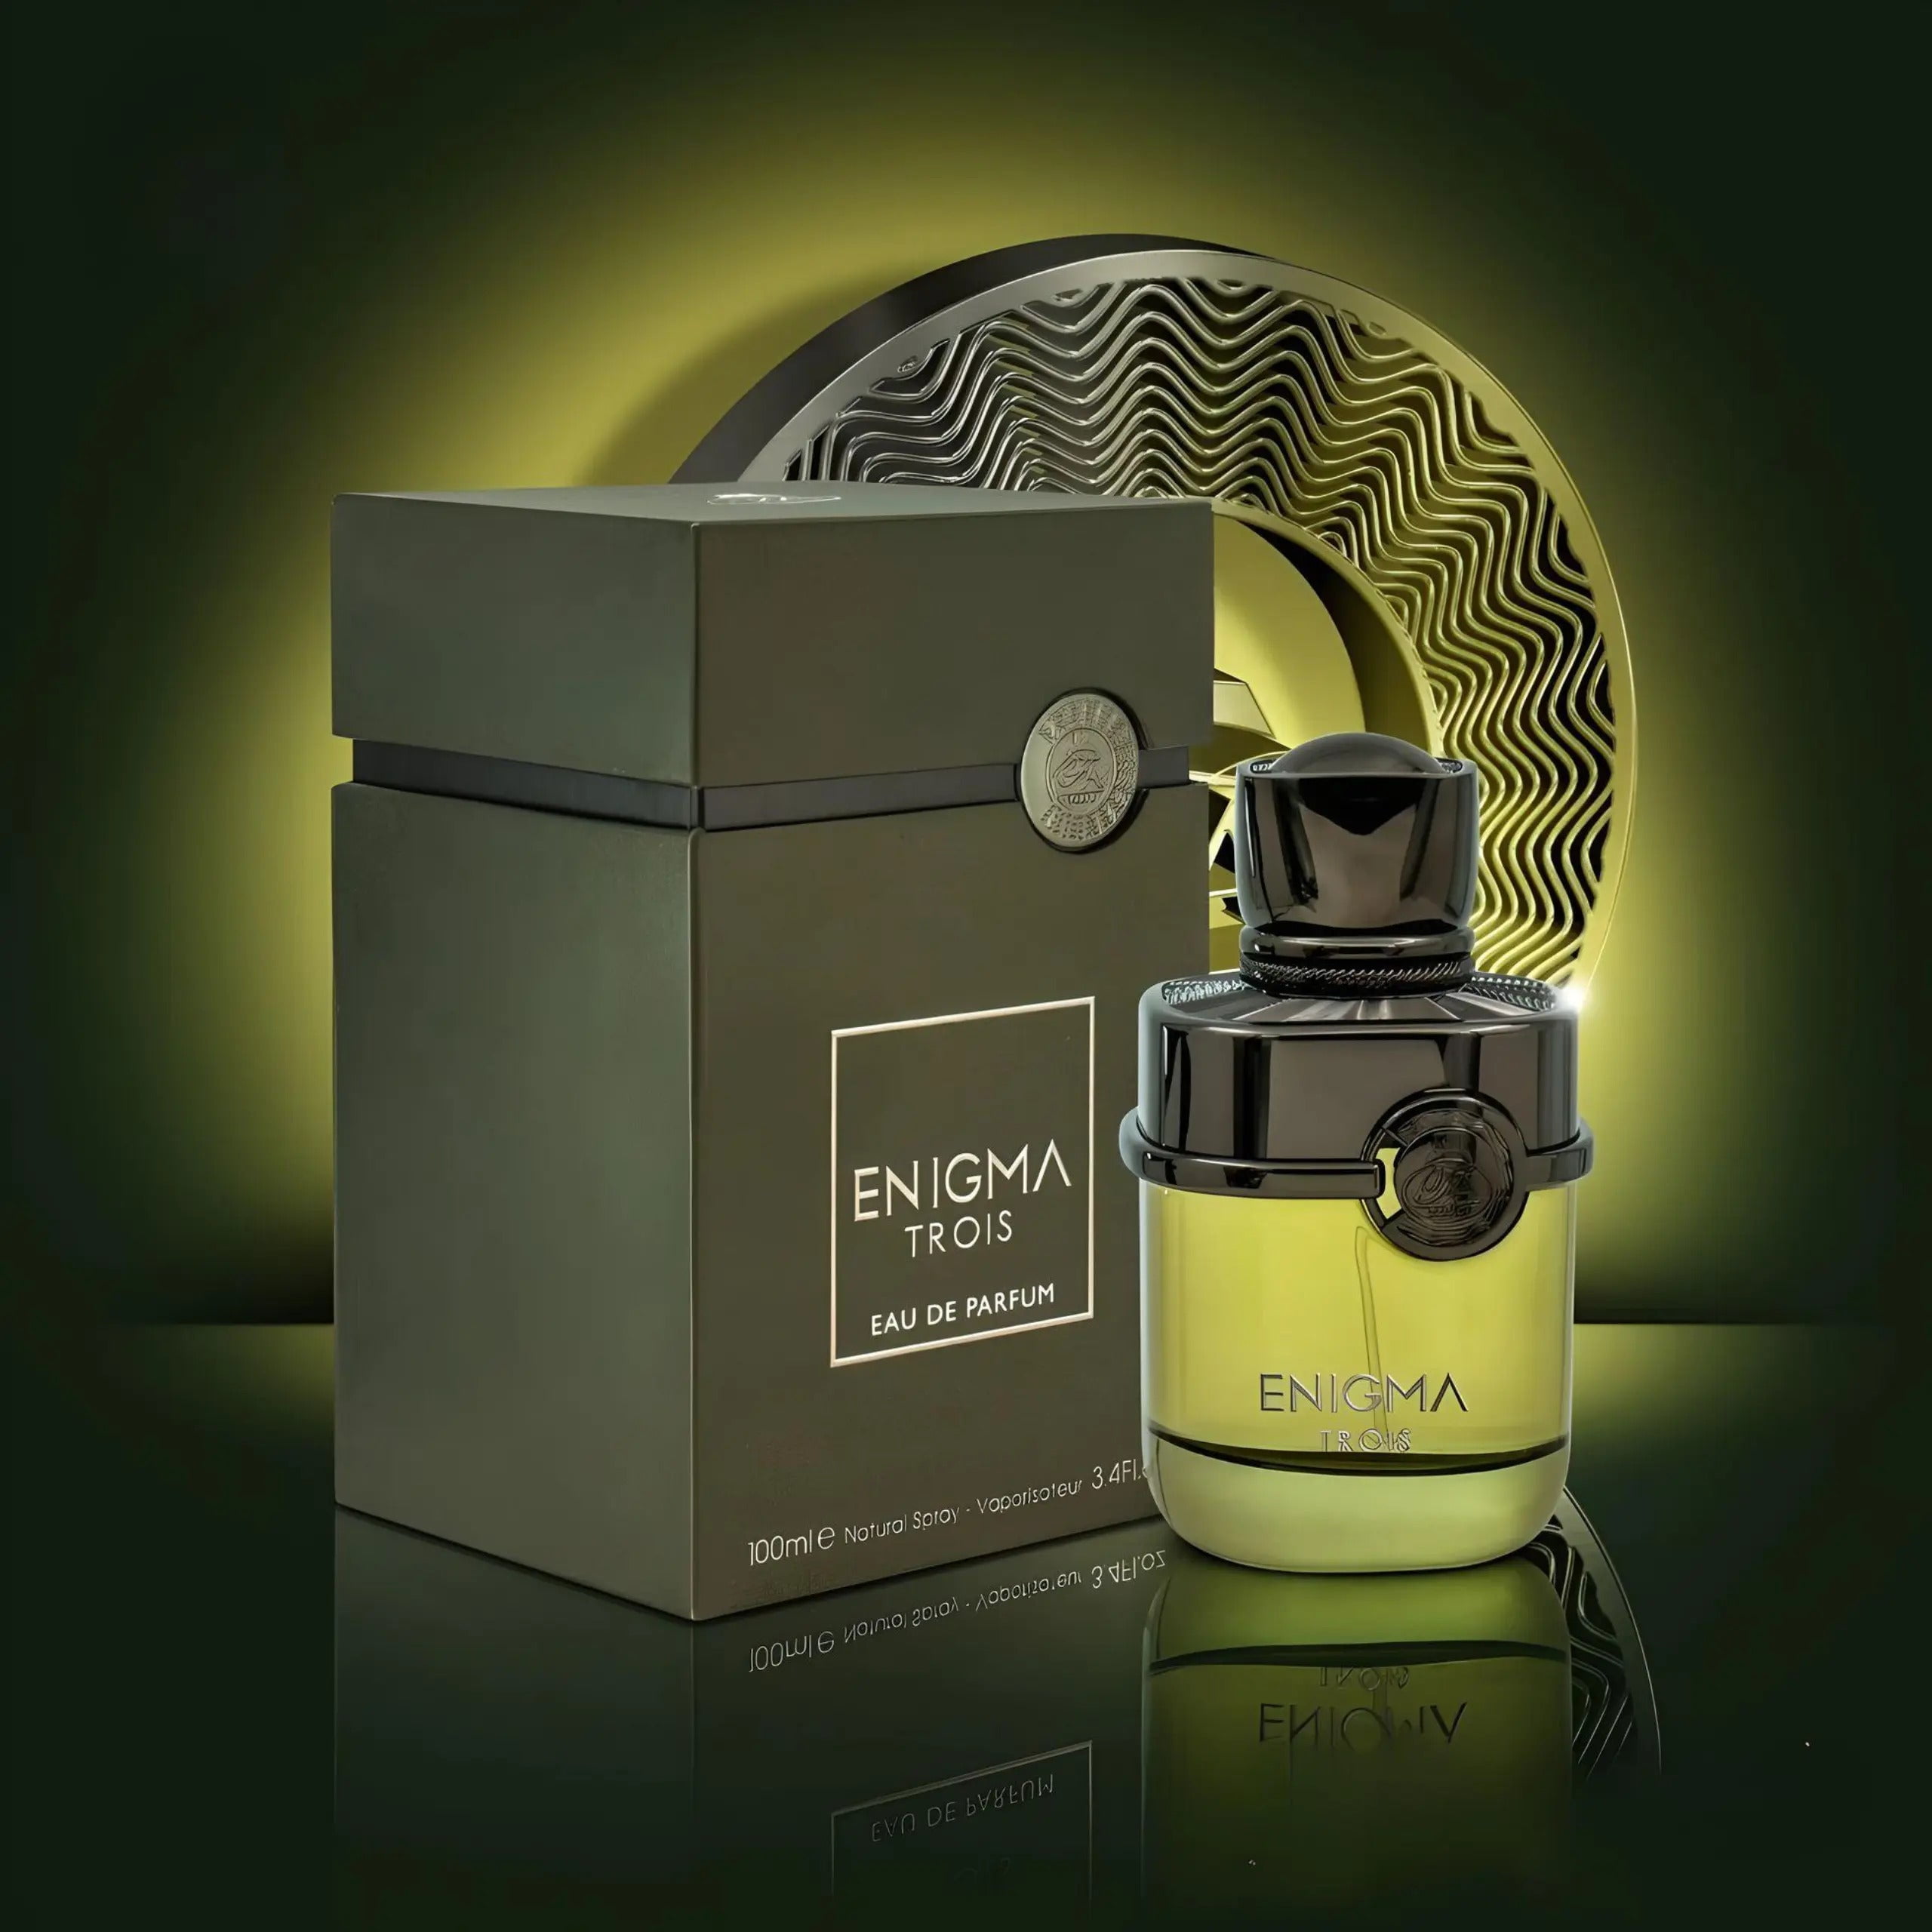 Trebit Bleu Noire Eau De Parfum By Fragrance World 100ml 3.4 fl oz – Triple  Traders